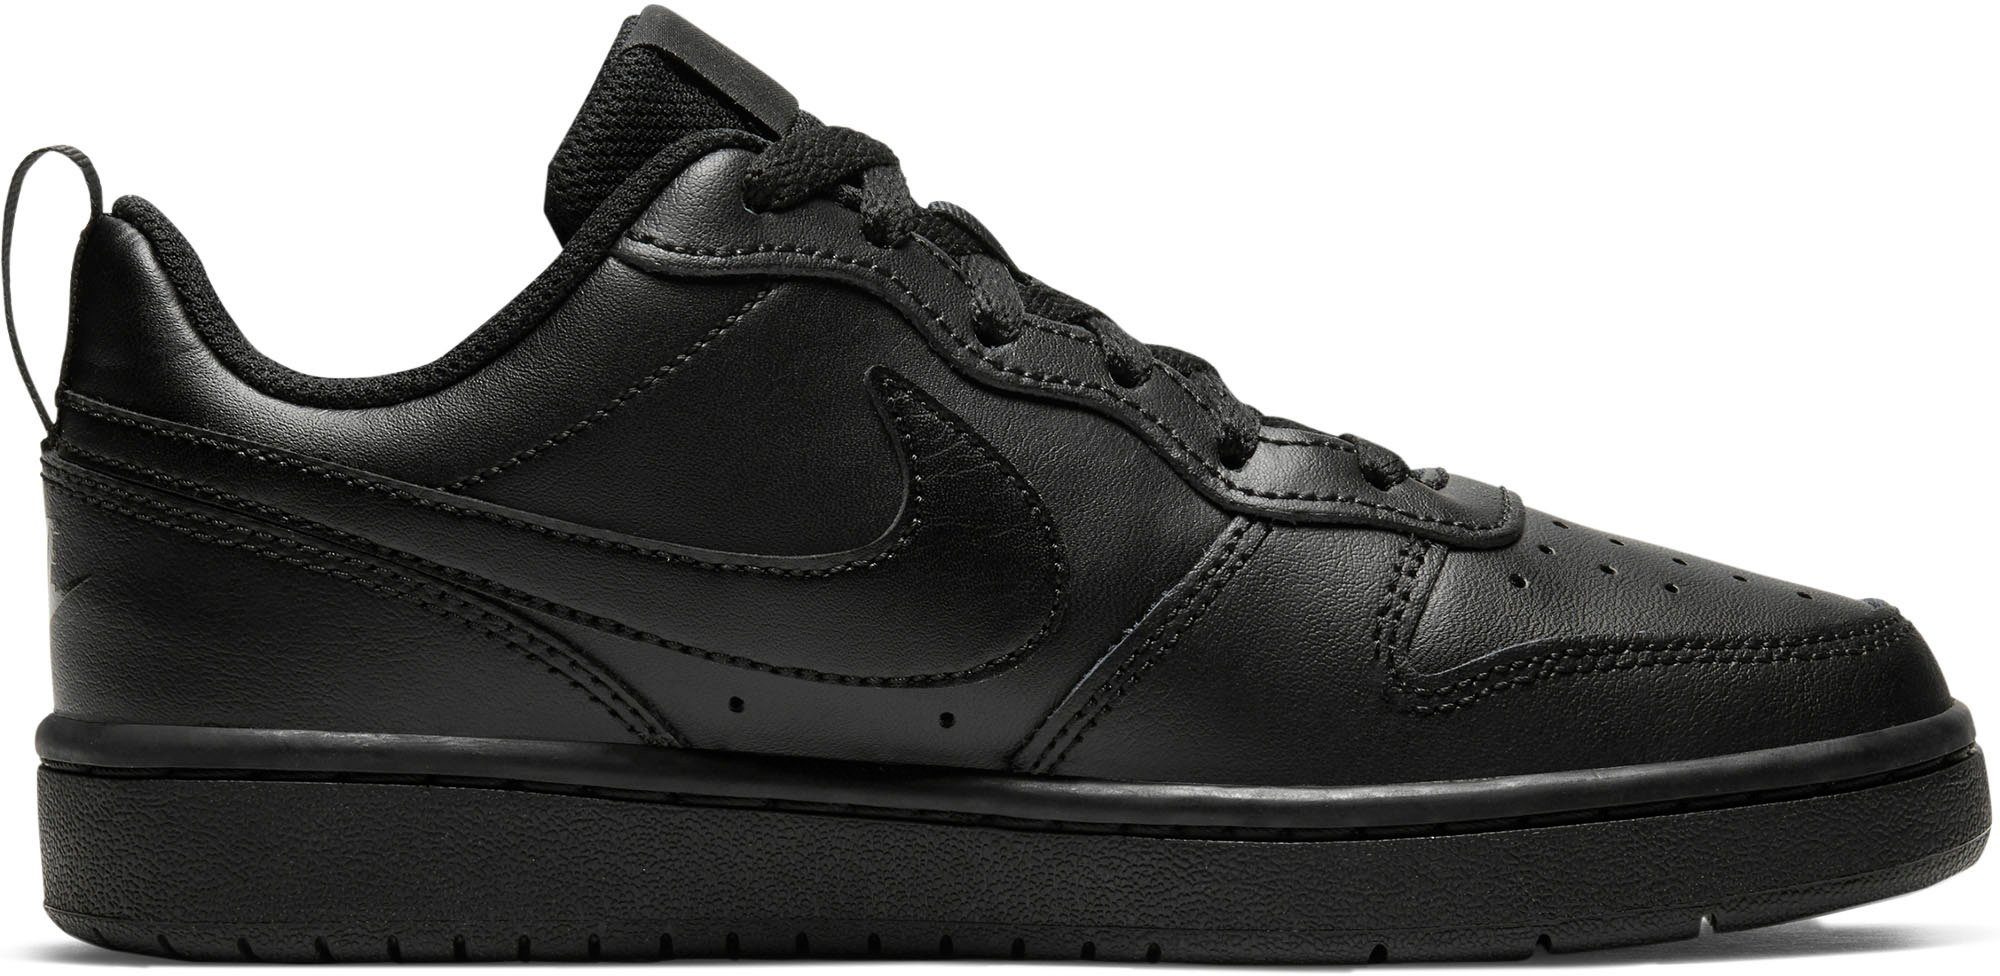 Force Sneaker auf Nike des Air Sportswear Design schwarz Spuren Borough Court den 1